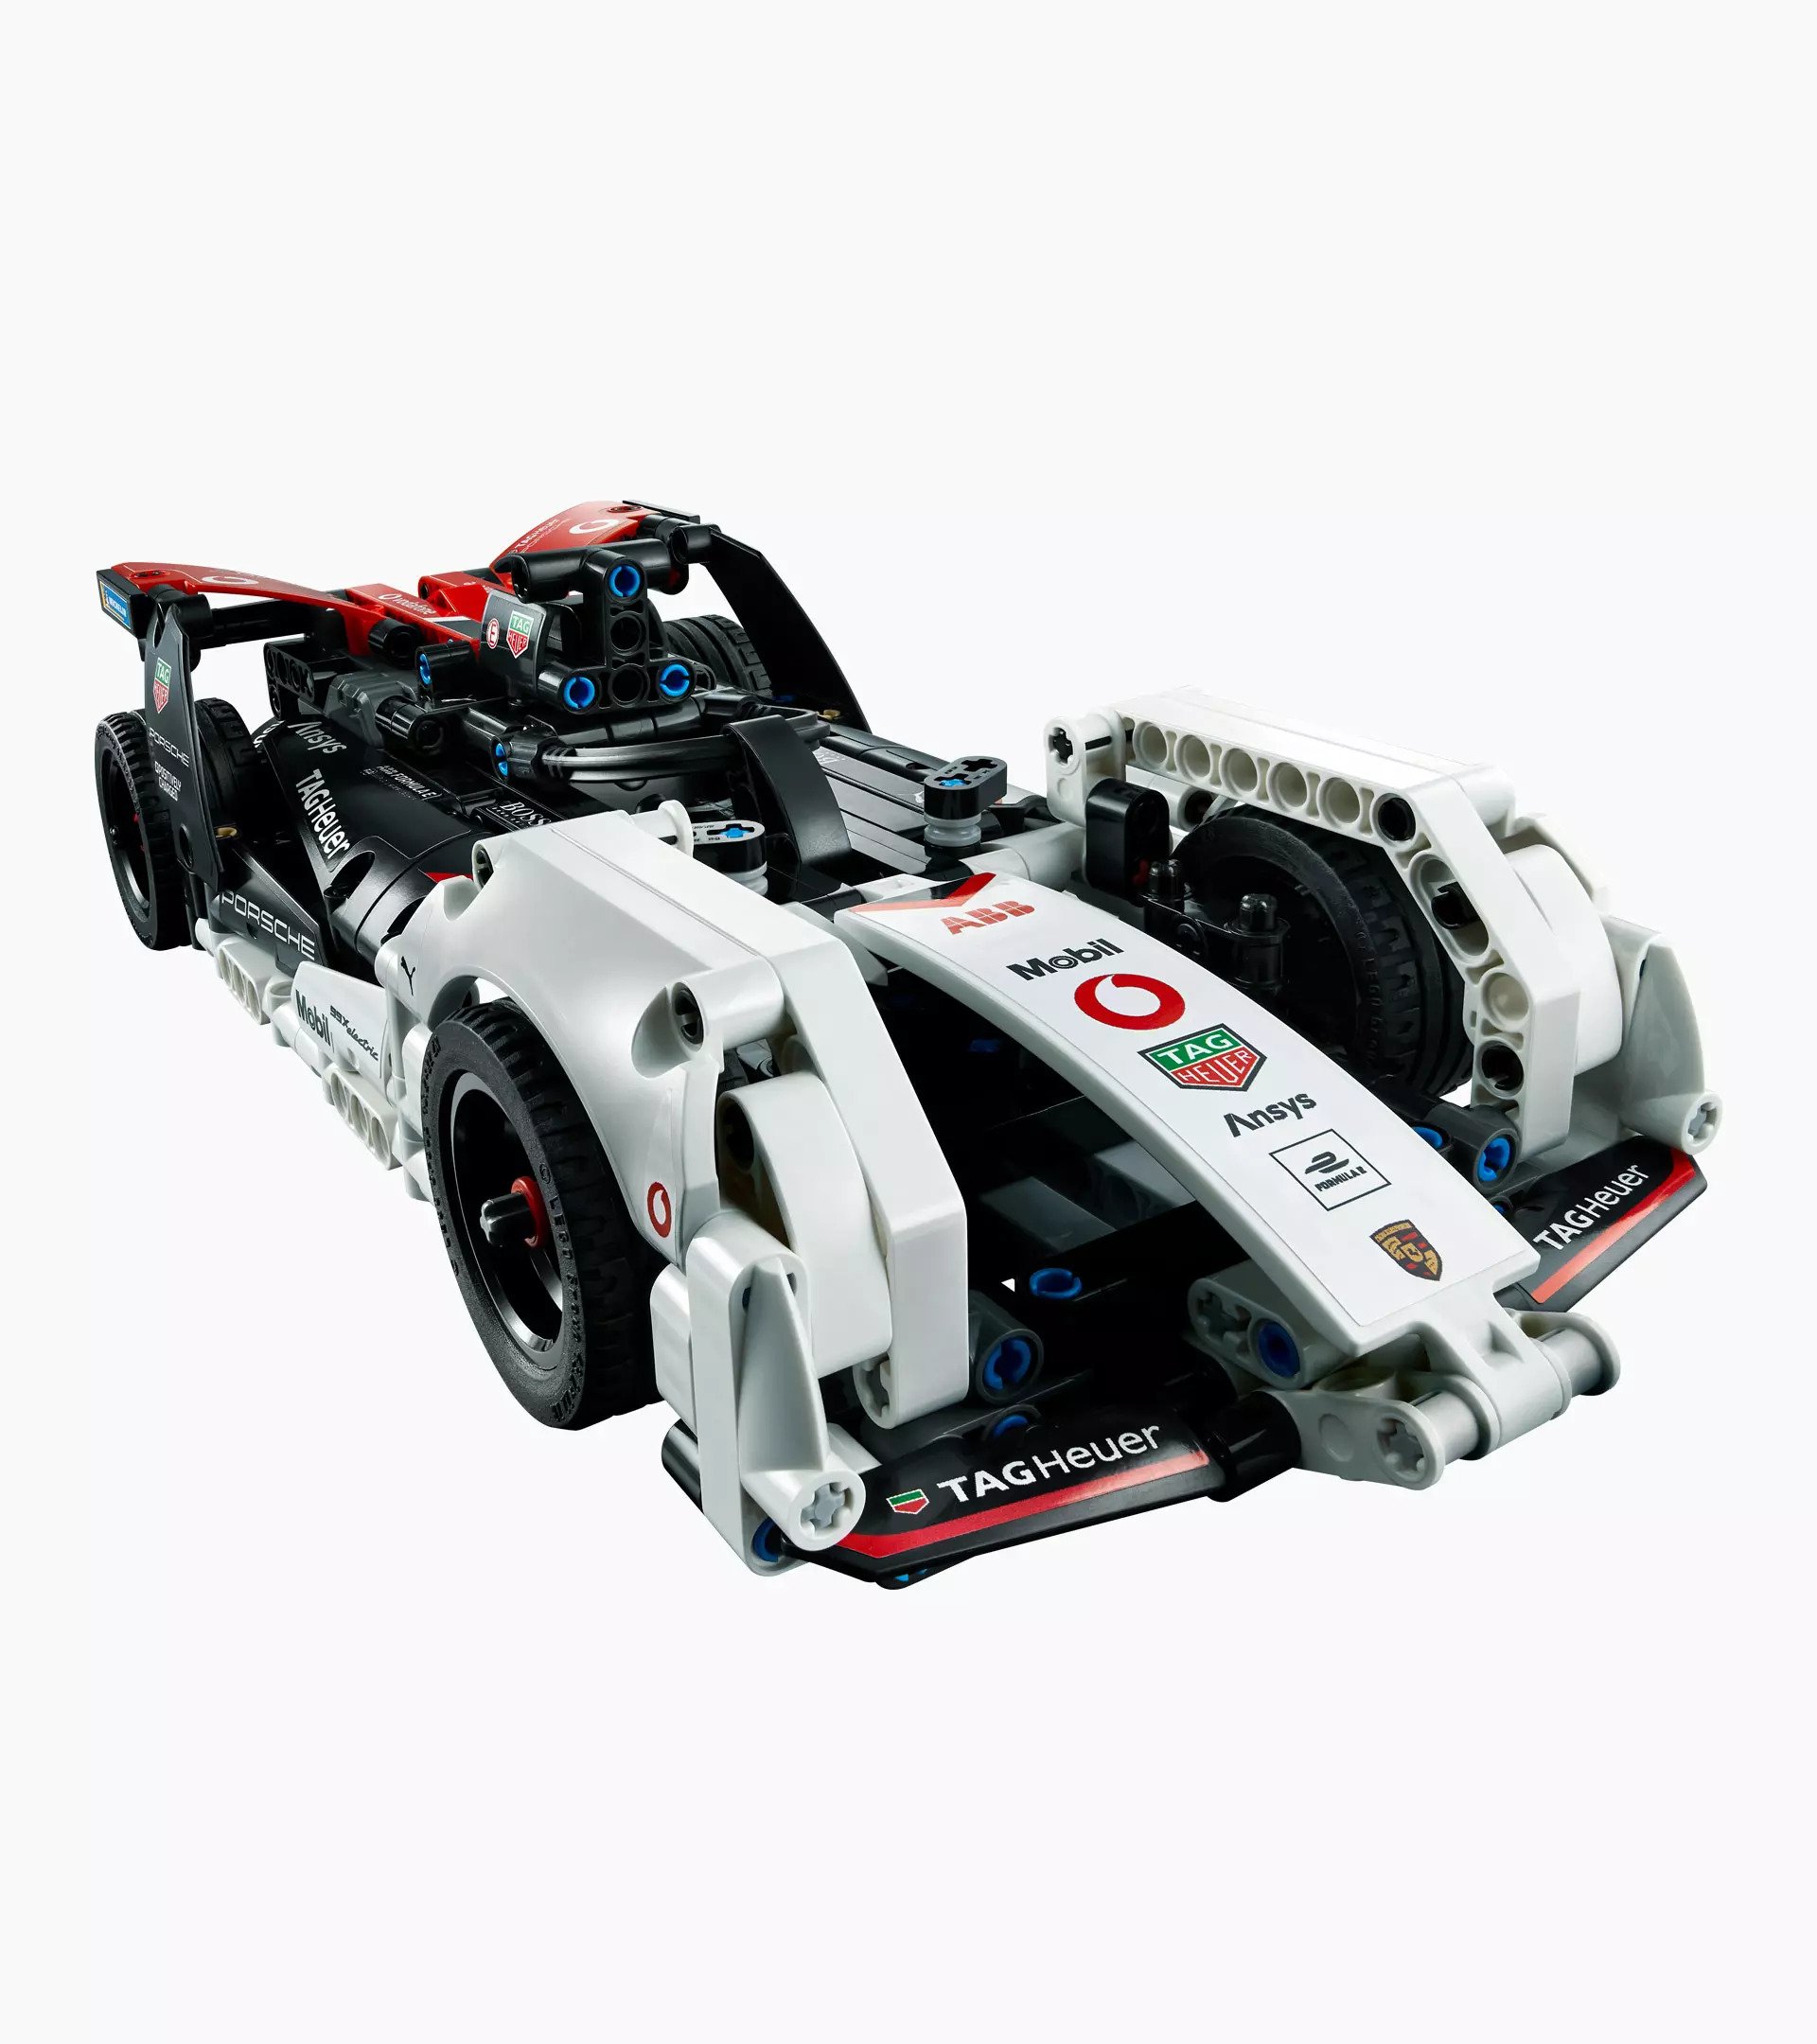 Lego Technic Formula E